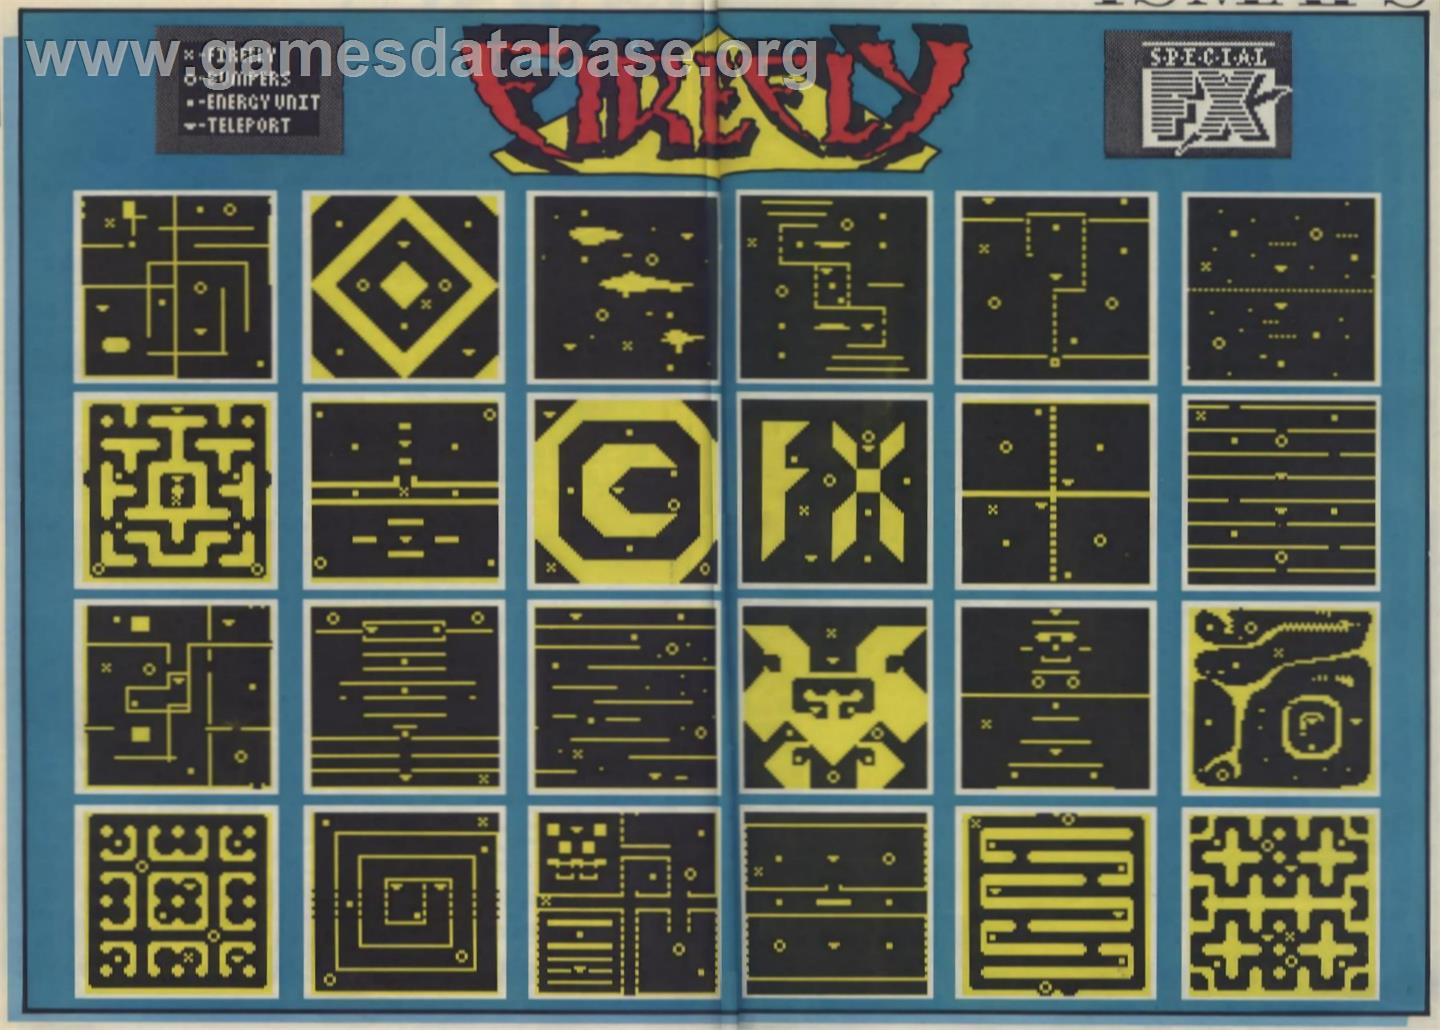 Firefly - Sinclair ZX Spectrum - Artwork - Map